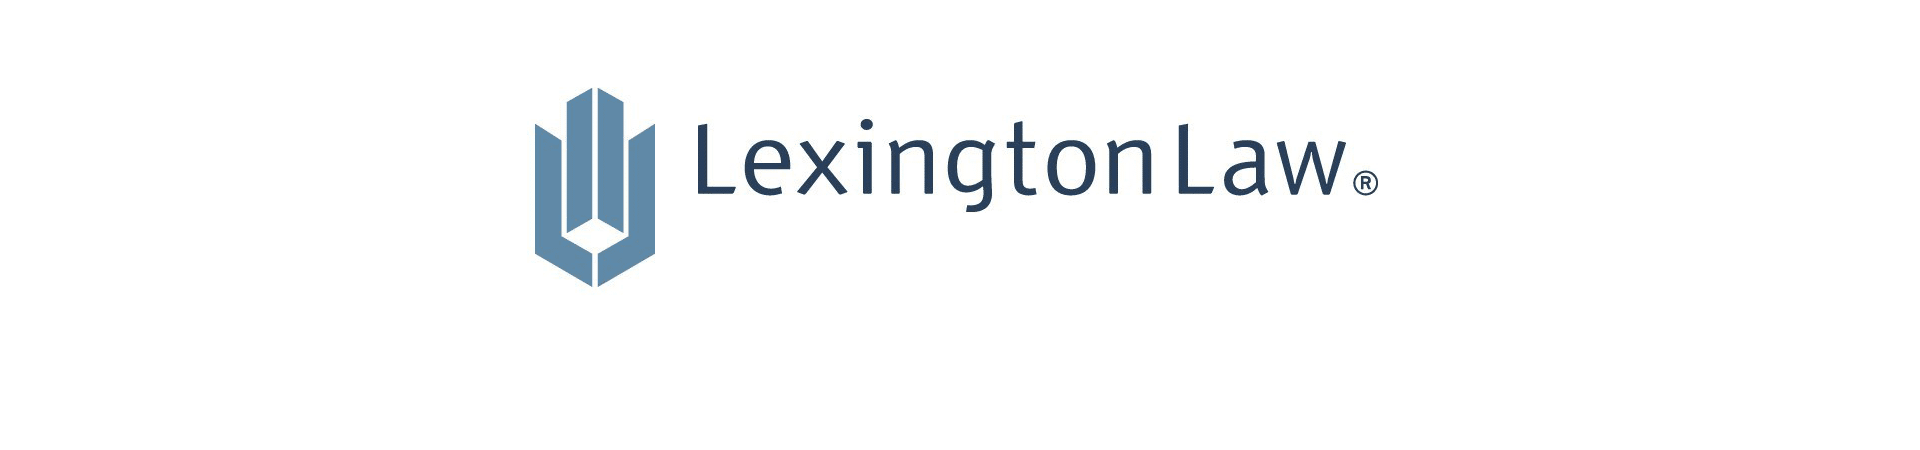 Lexington Law review